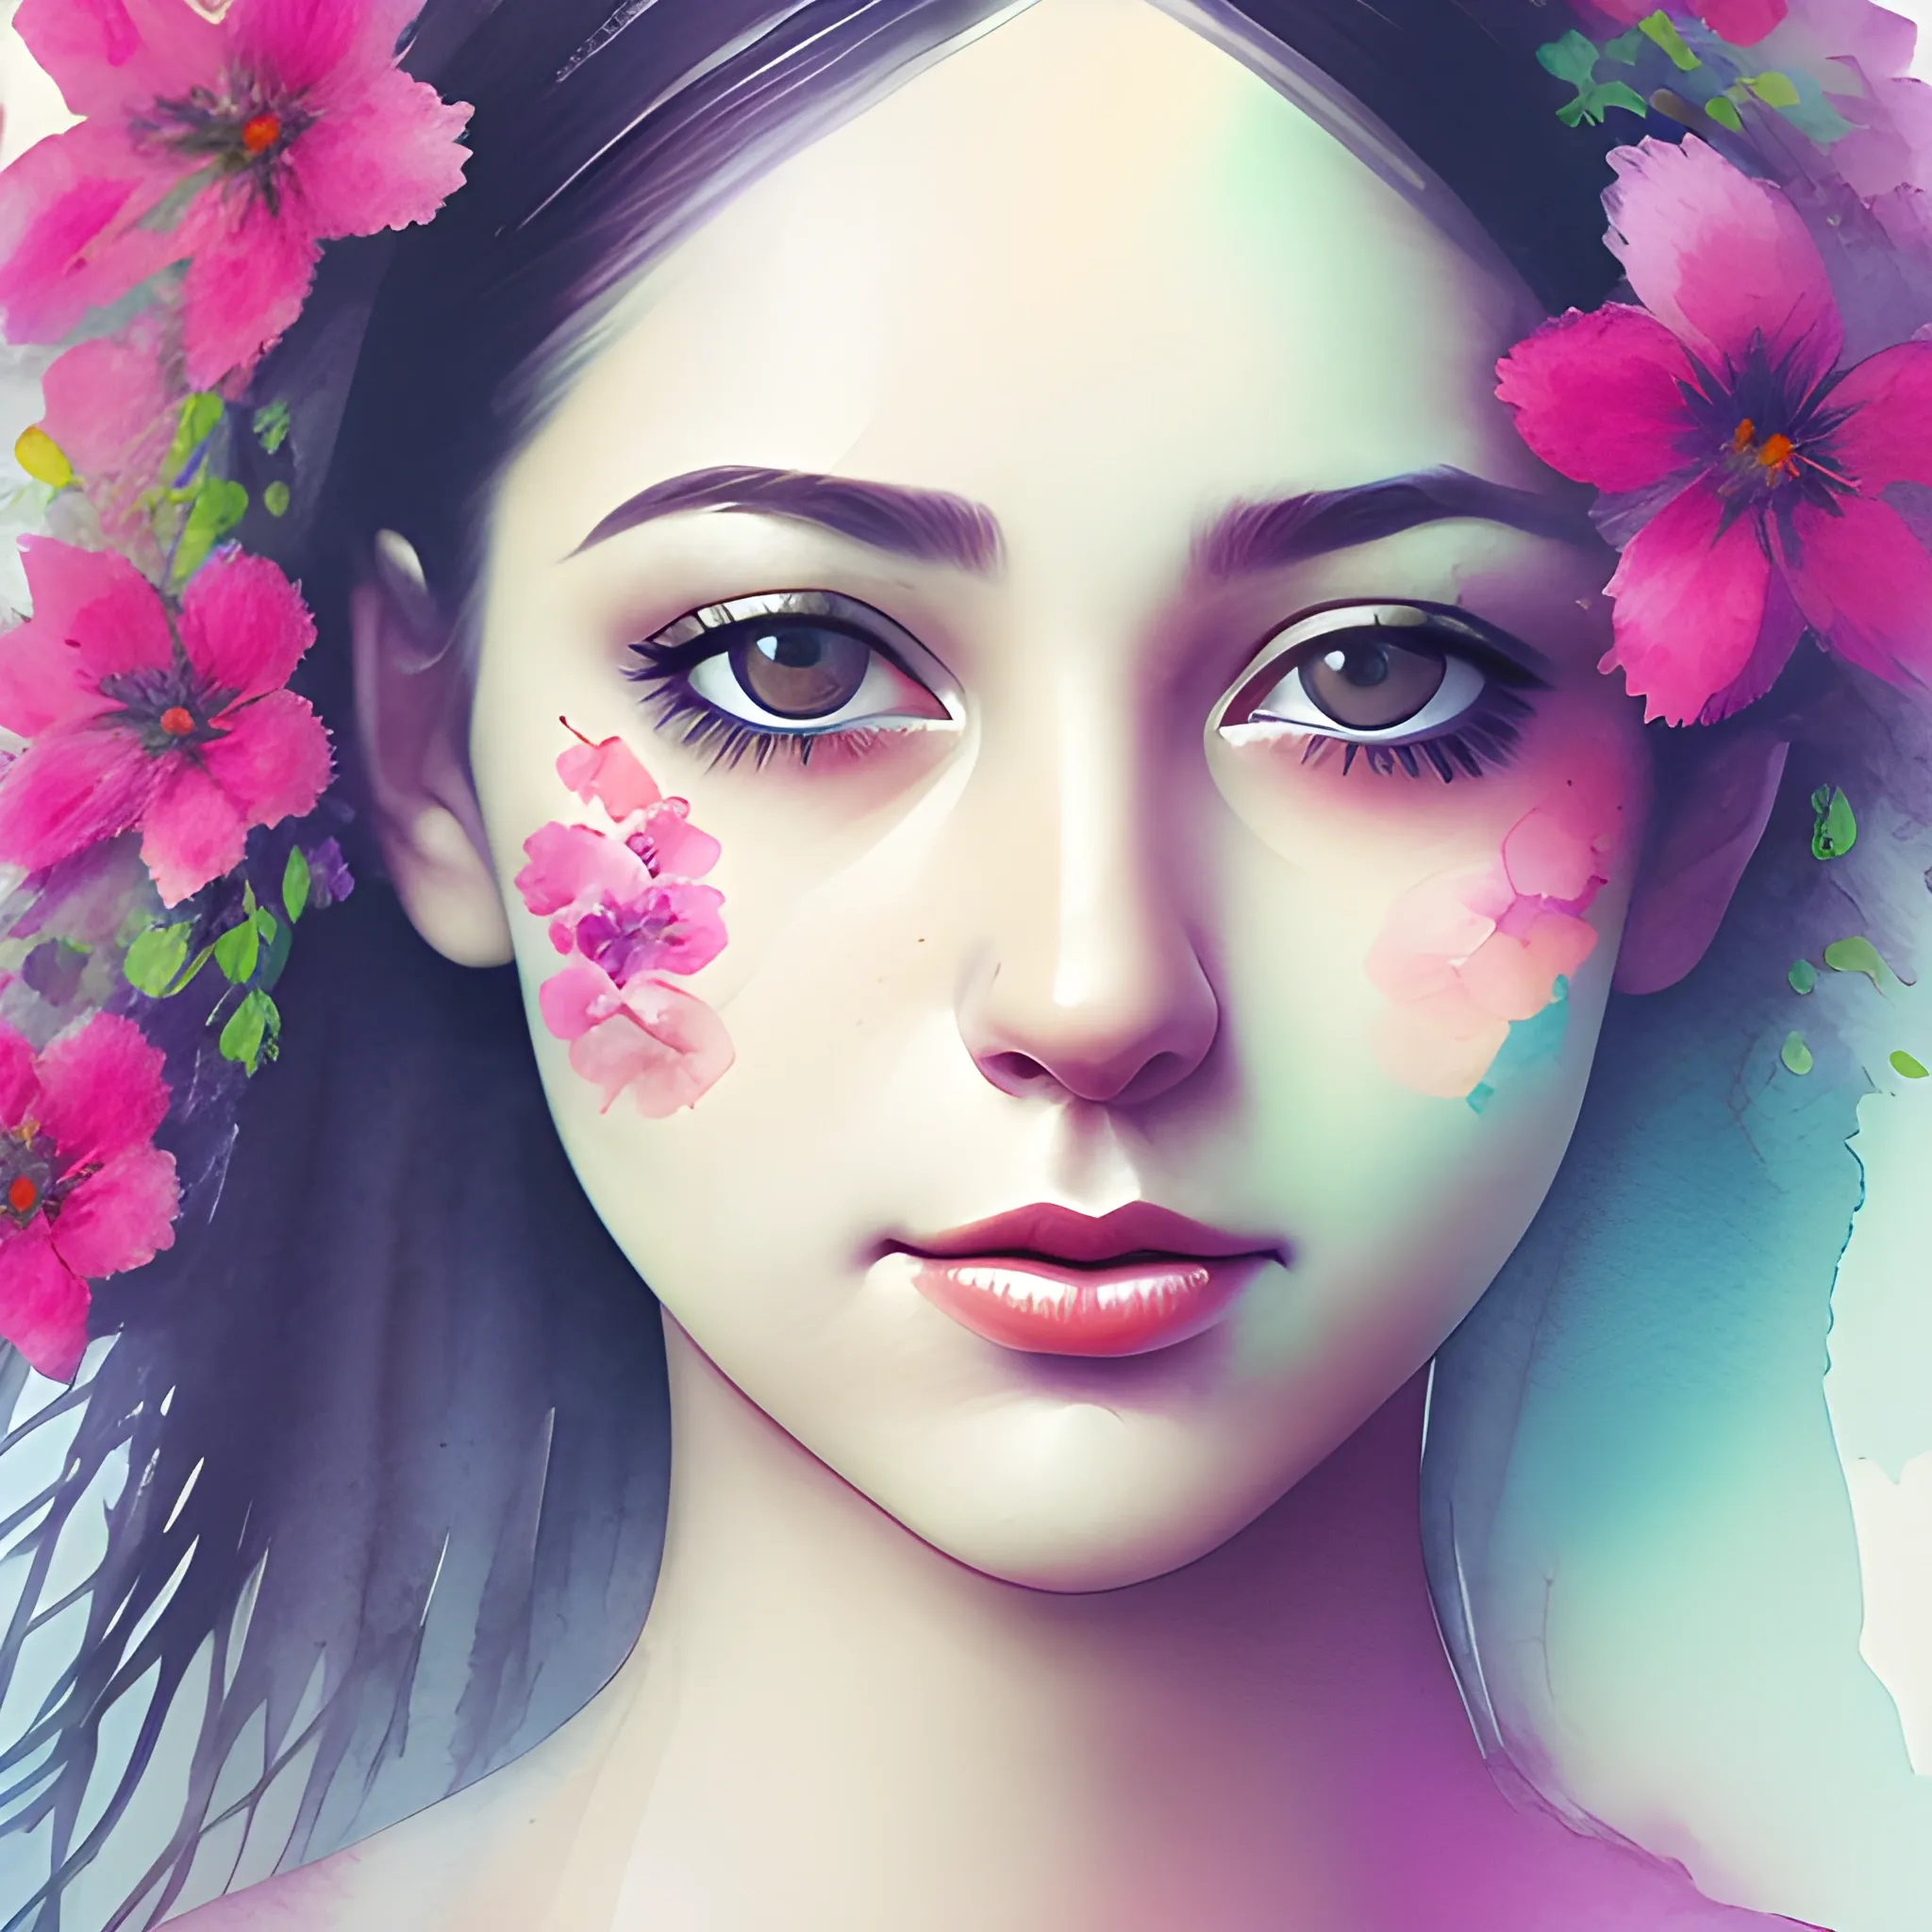 female portrait face, close up, foggy background, vibrant color, flower decoration, Water Color